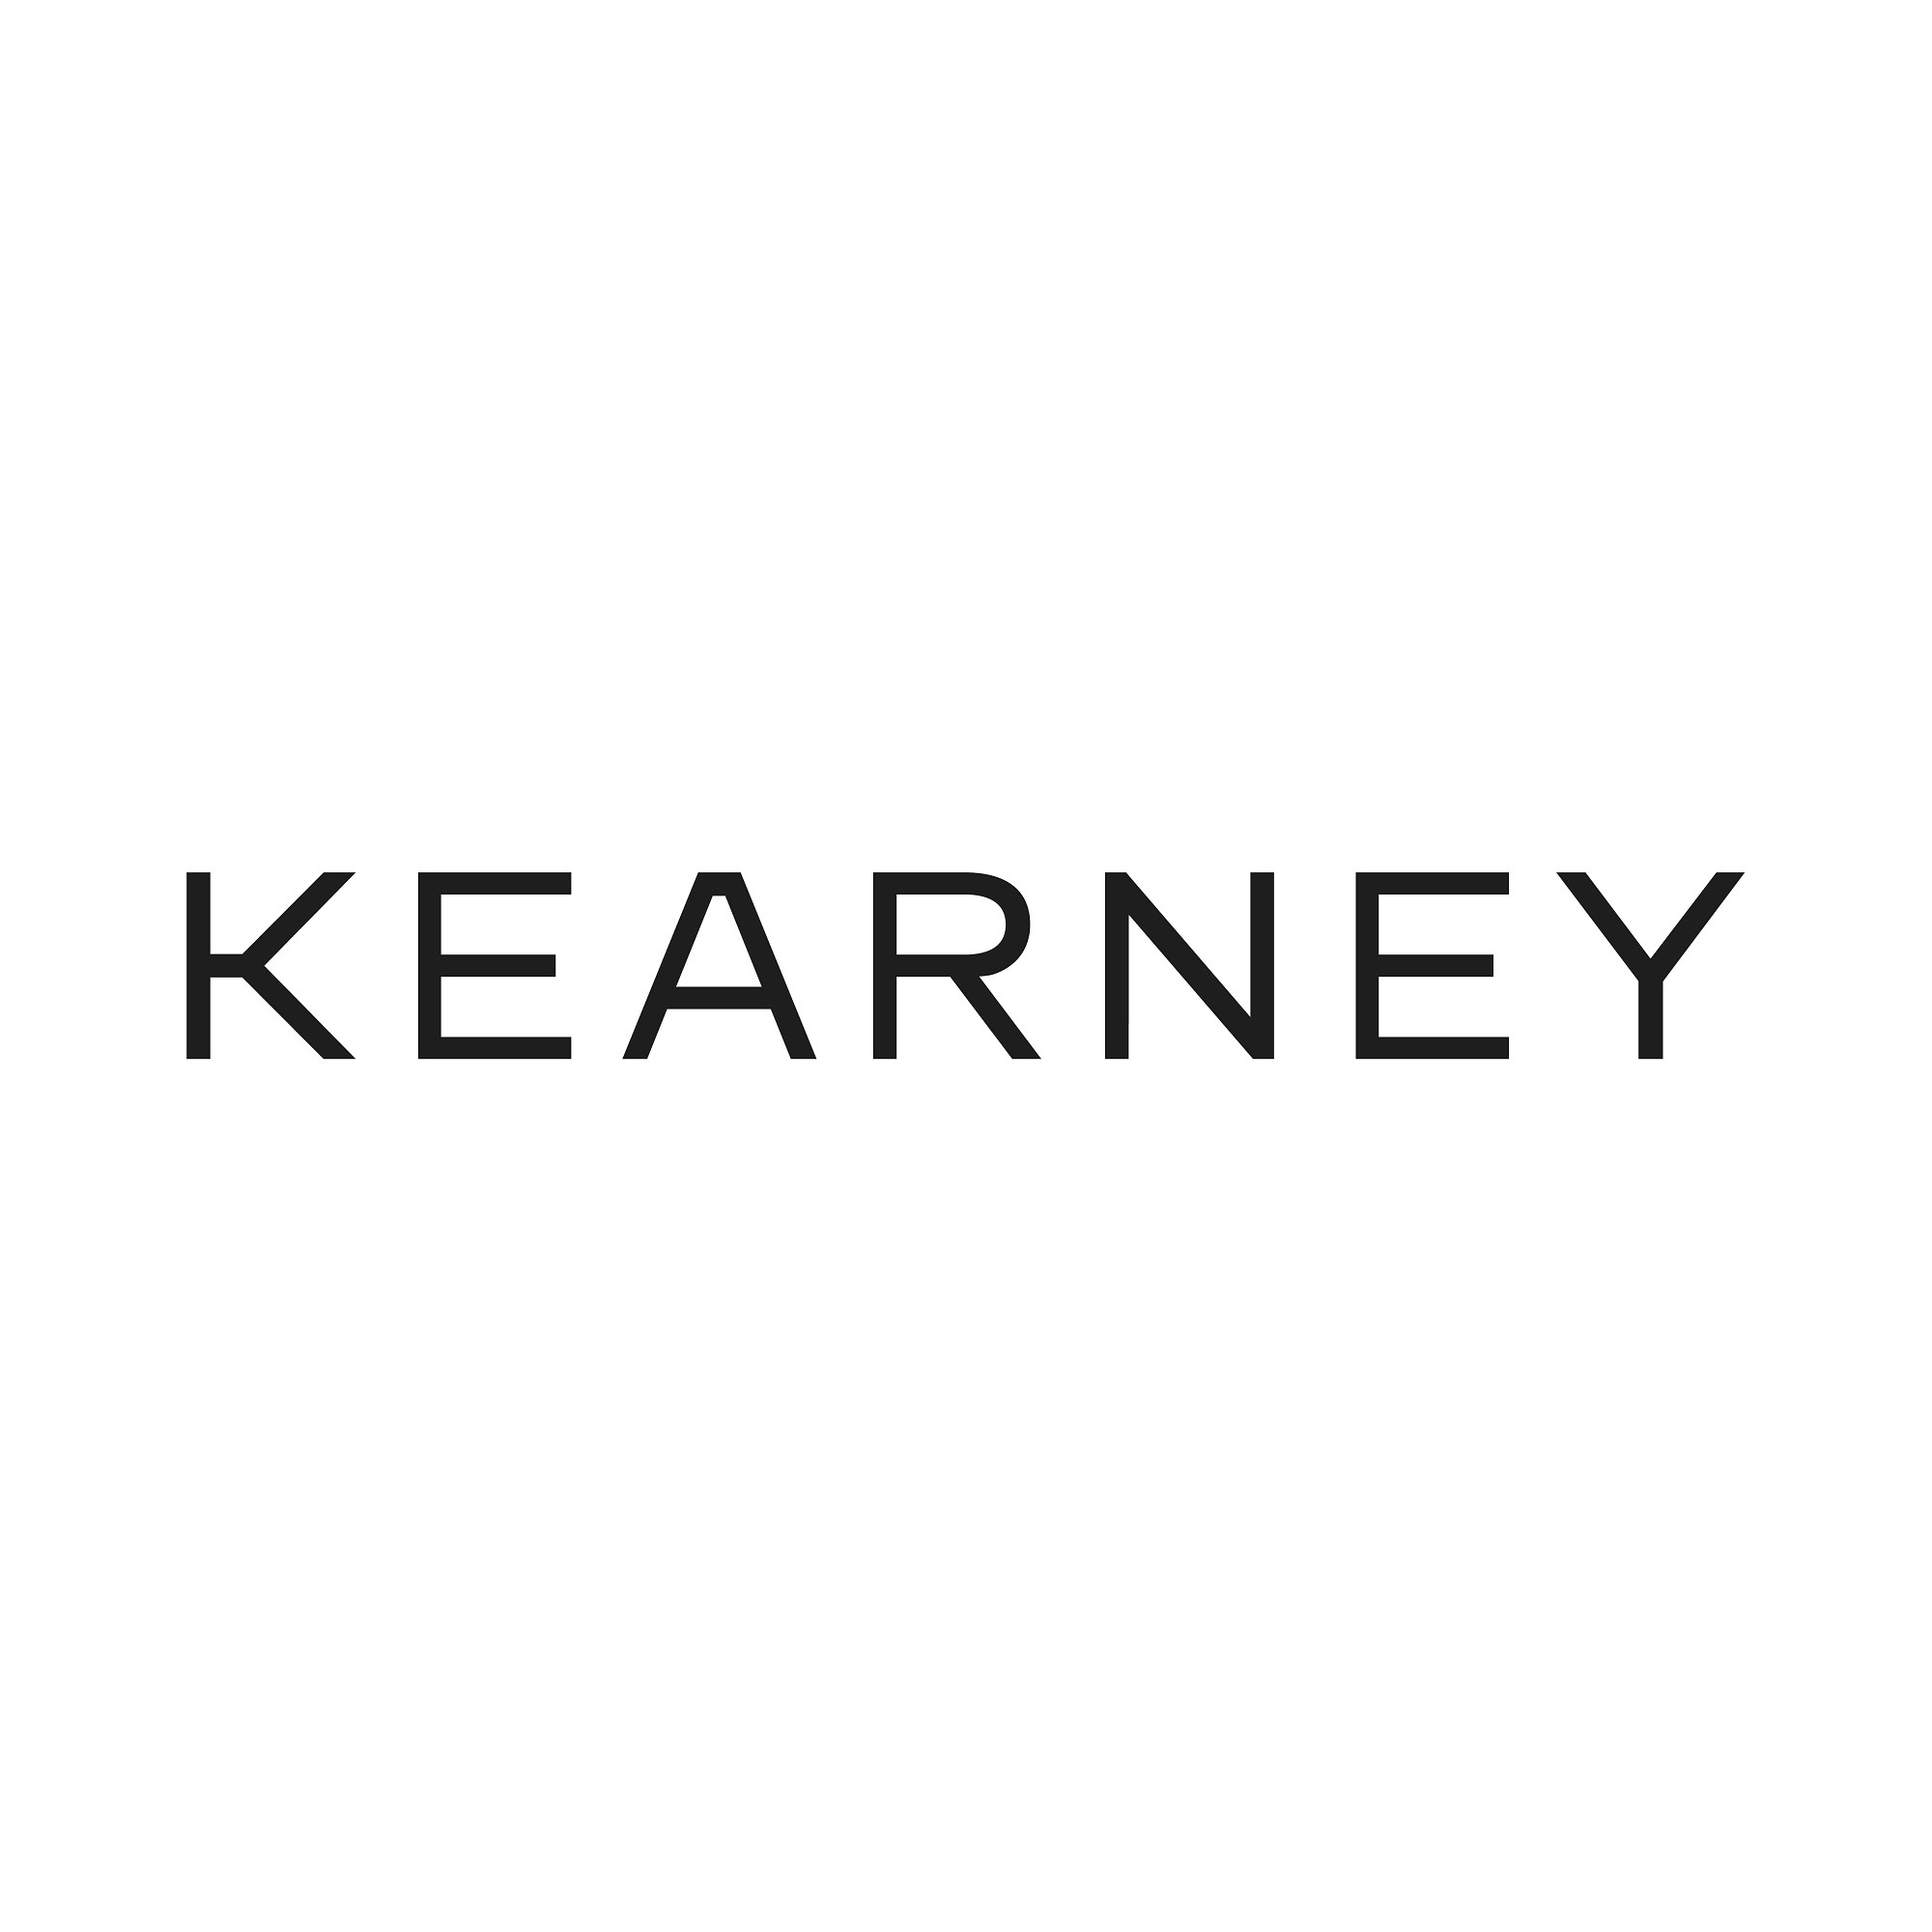 the Kearney logo.